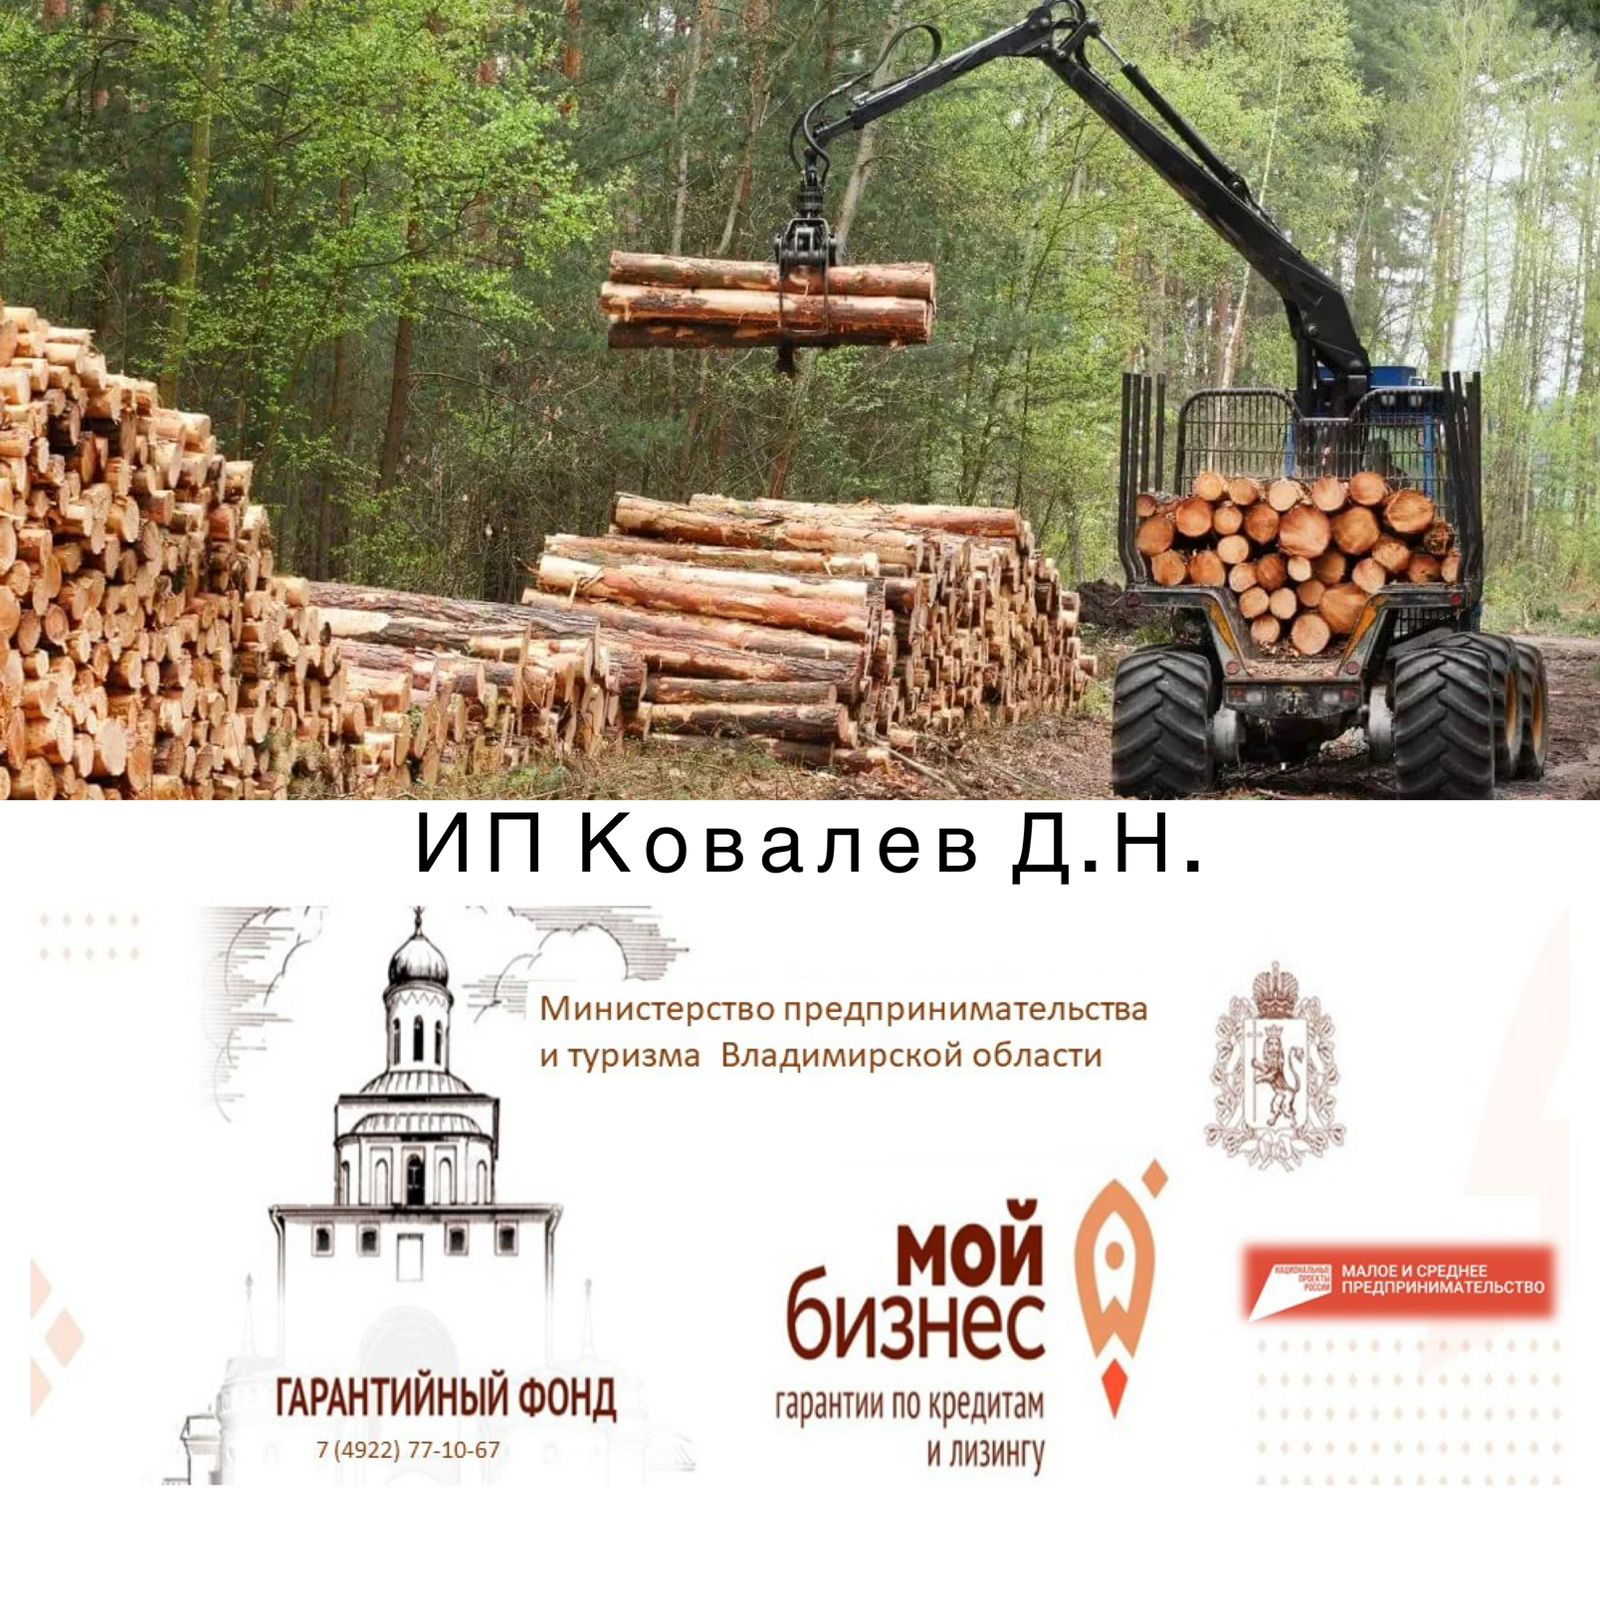 Бизнес в сфере лесозаготовки получил поддержку